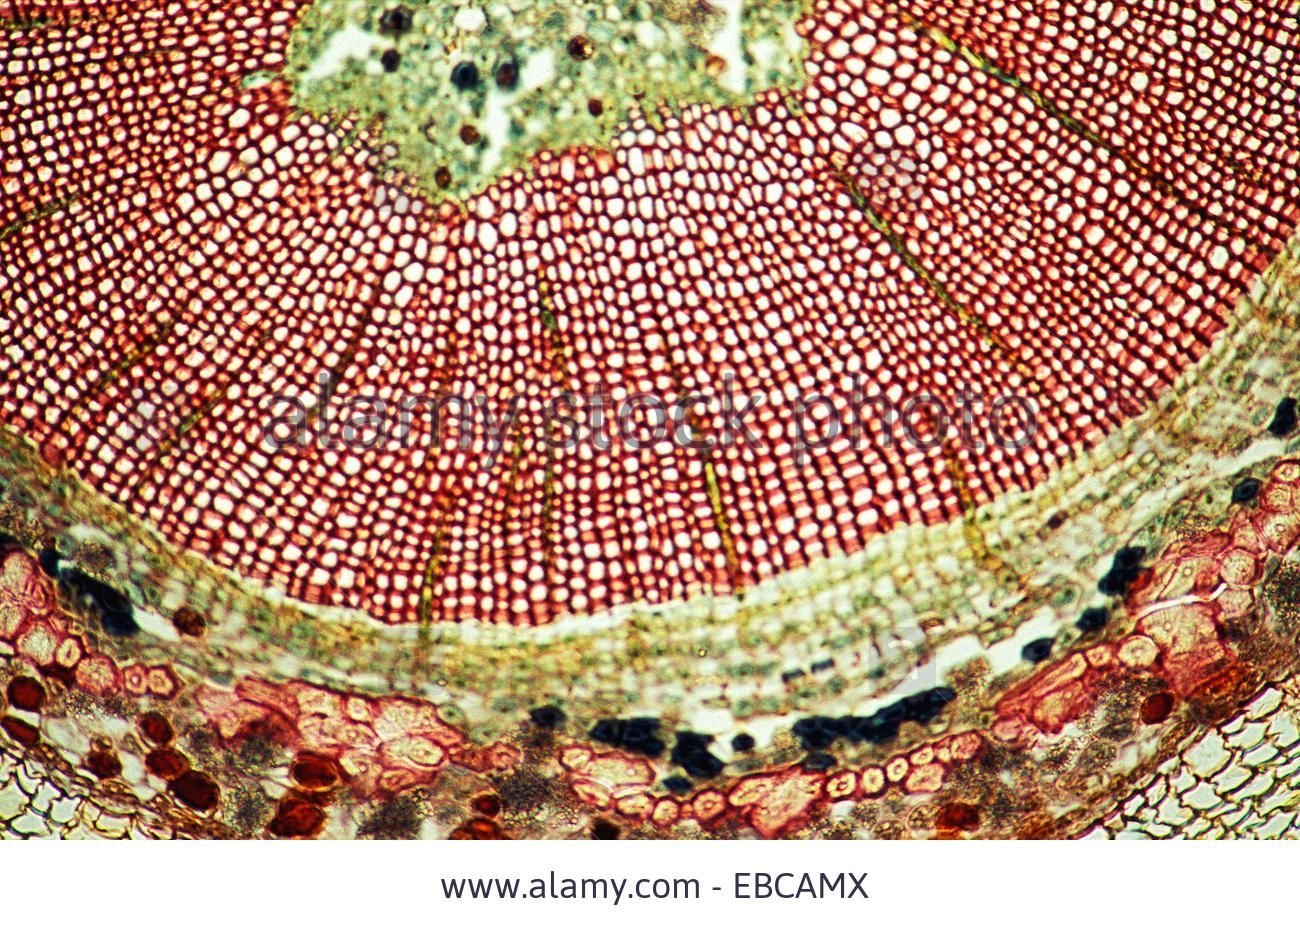 строение раст клетки под микроскопом фото 50